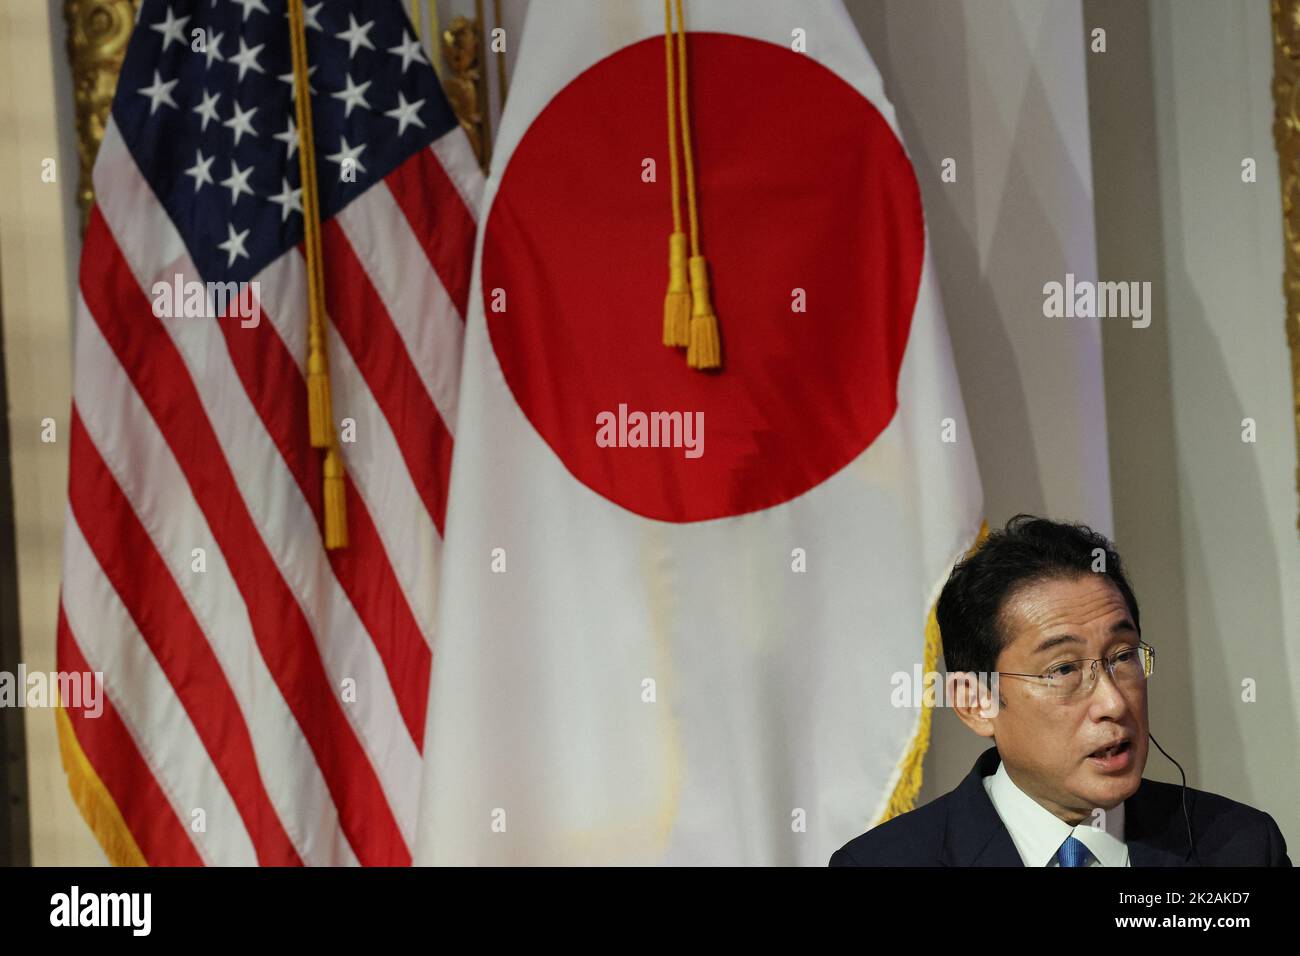 Le Premier ministre japonais Fumio Kishida prend la parole lors d'une conférence de presse à la Bourse de New York (NYSE) en marge de la session de 77th de l'Assemblée générale des Nations Unies à New York, aux États-Unis, au 22 septembre 2022. REUTERS/Brendan McDermid Banque D'Images